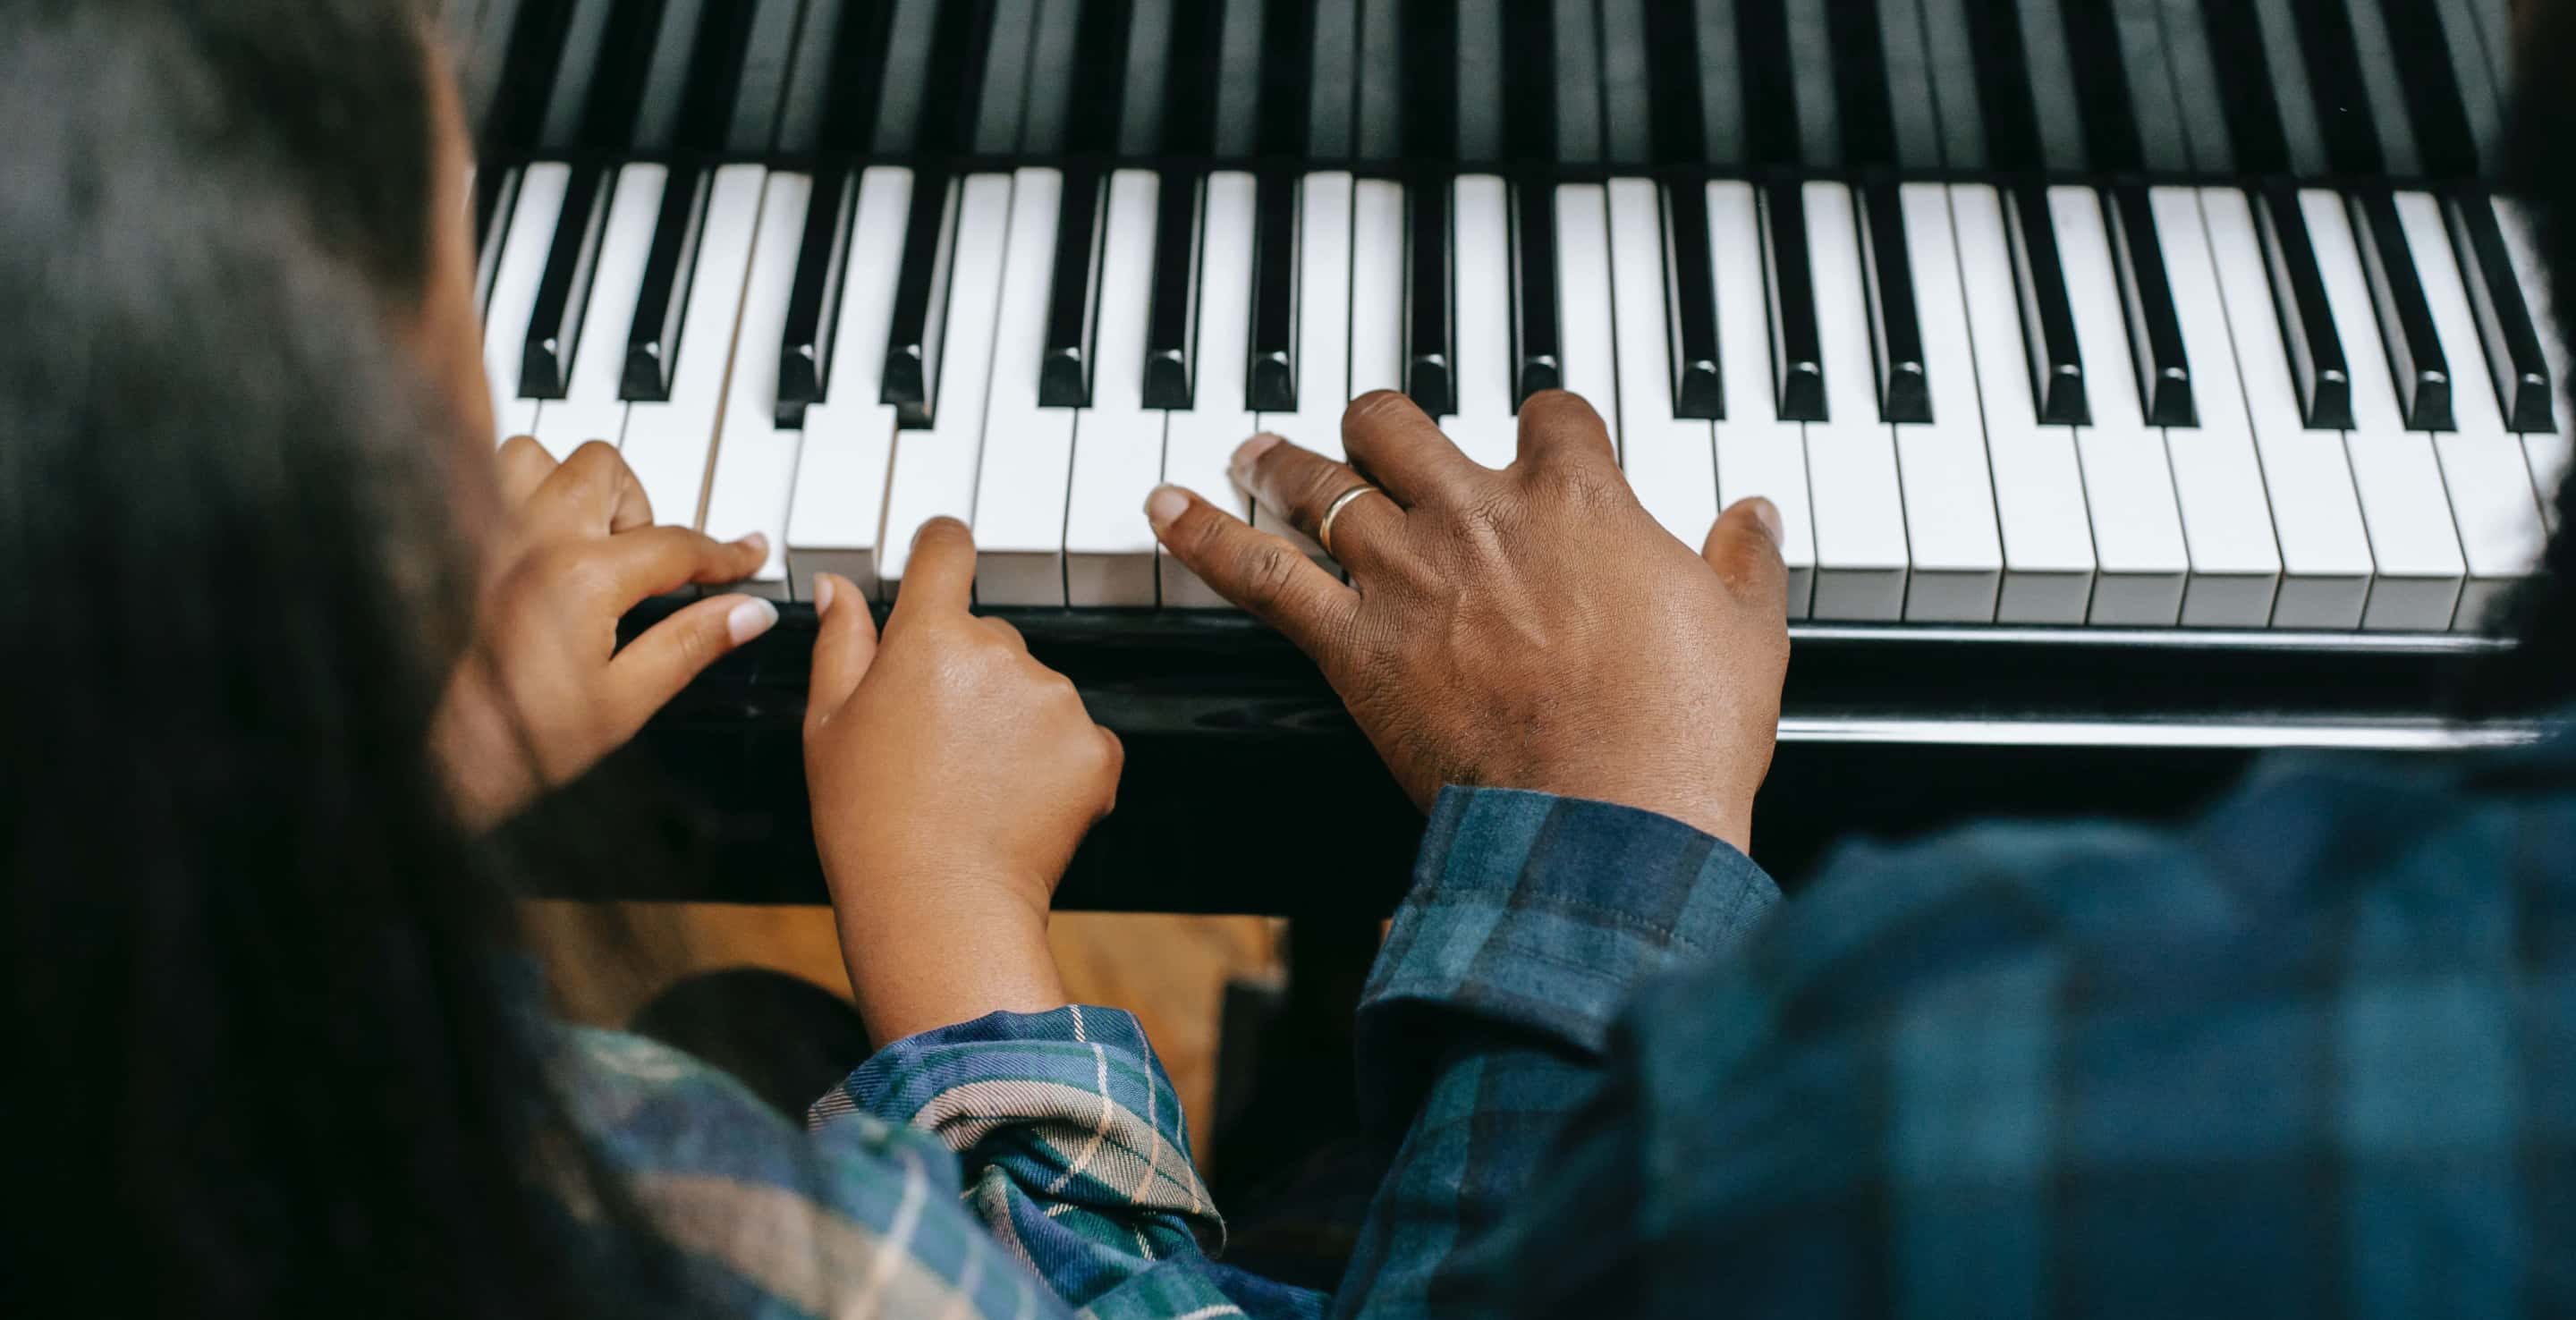 Eine Erwachsenenhand neben zwei Kinderhänden am Klavier